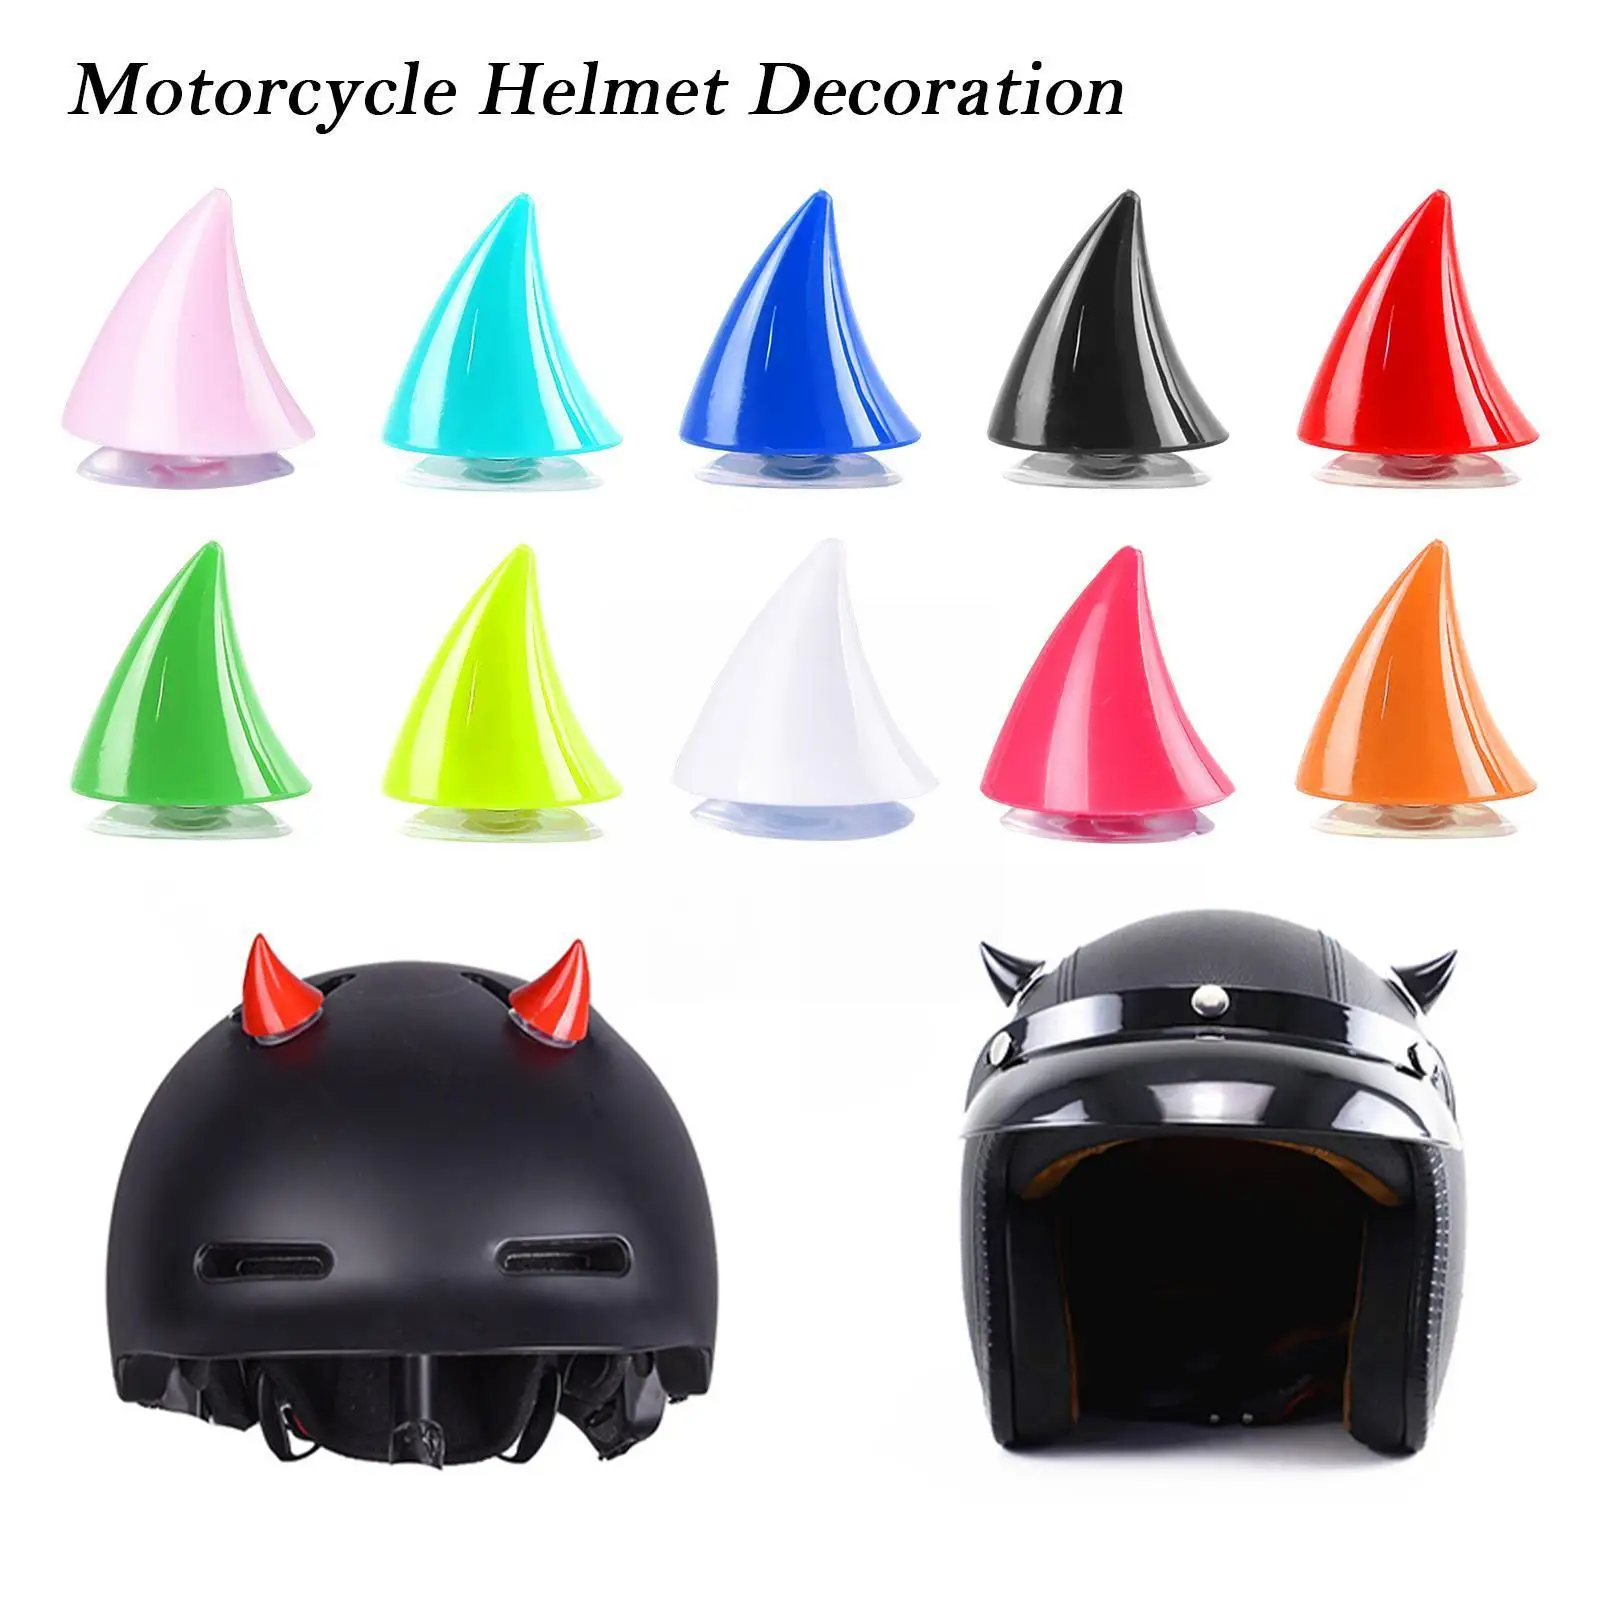 

Мотоциклетный шлем, дьявольский рог, Мотокросс на все лицо, электрический шлем, украшение, дорожные рожки, личный автомобиль H W1L9